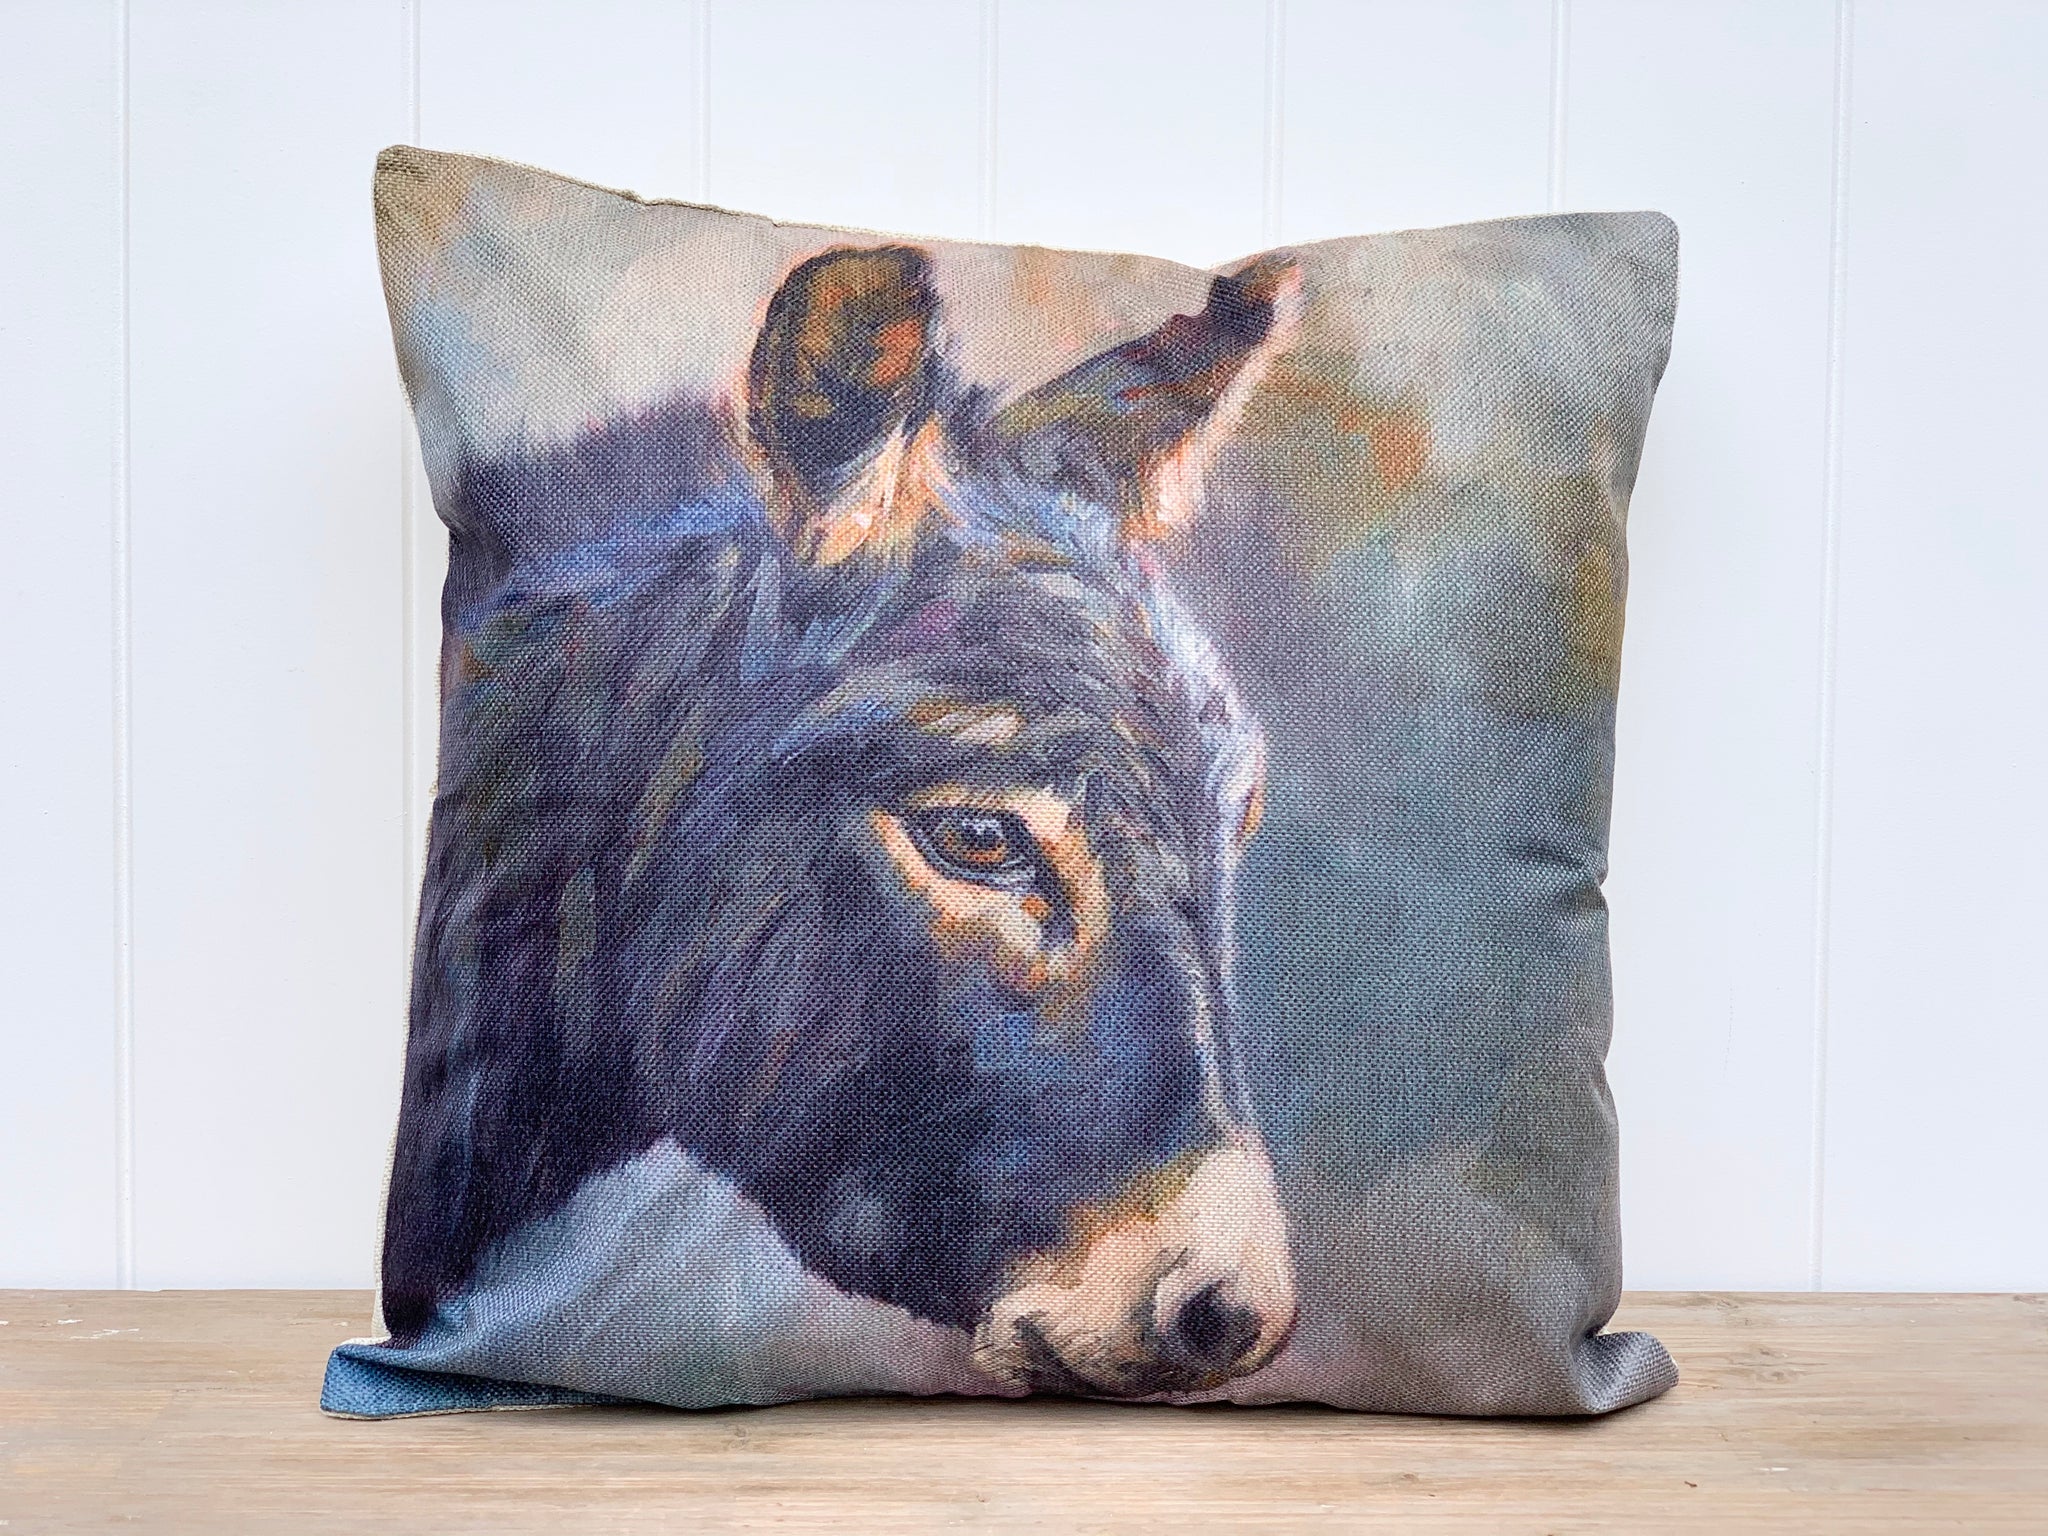 'Lone Donkey' Cushion